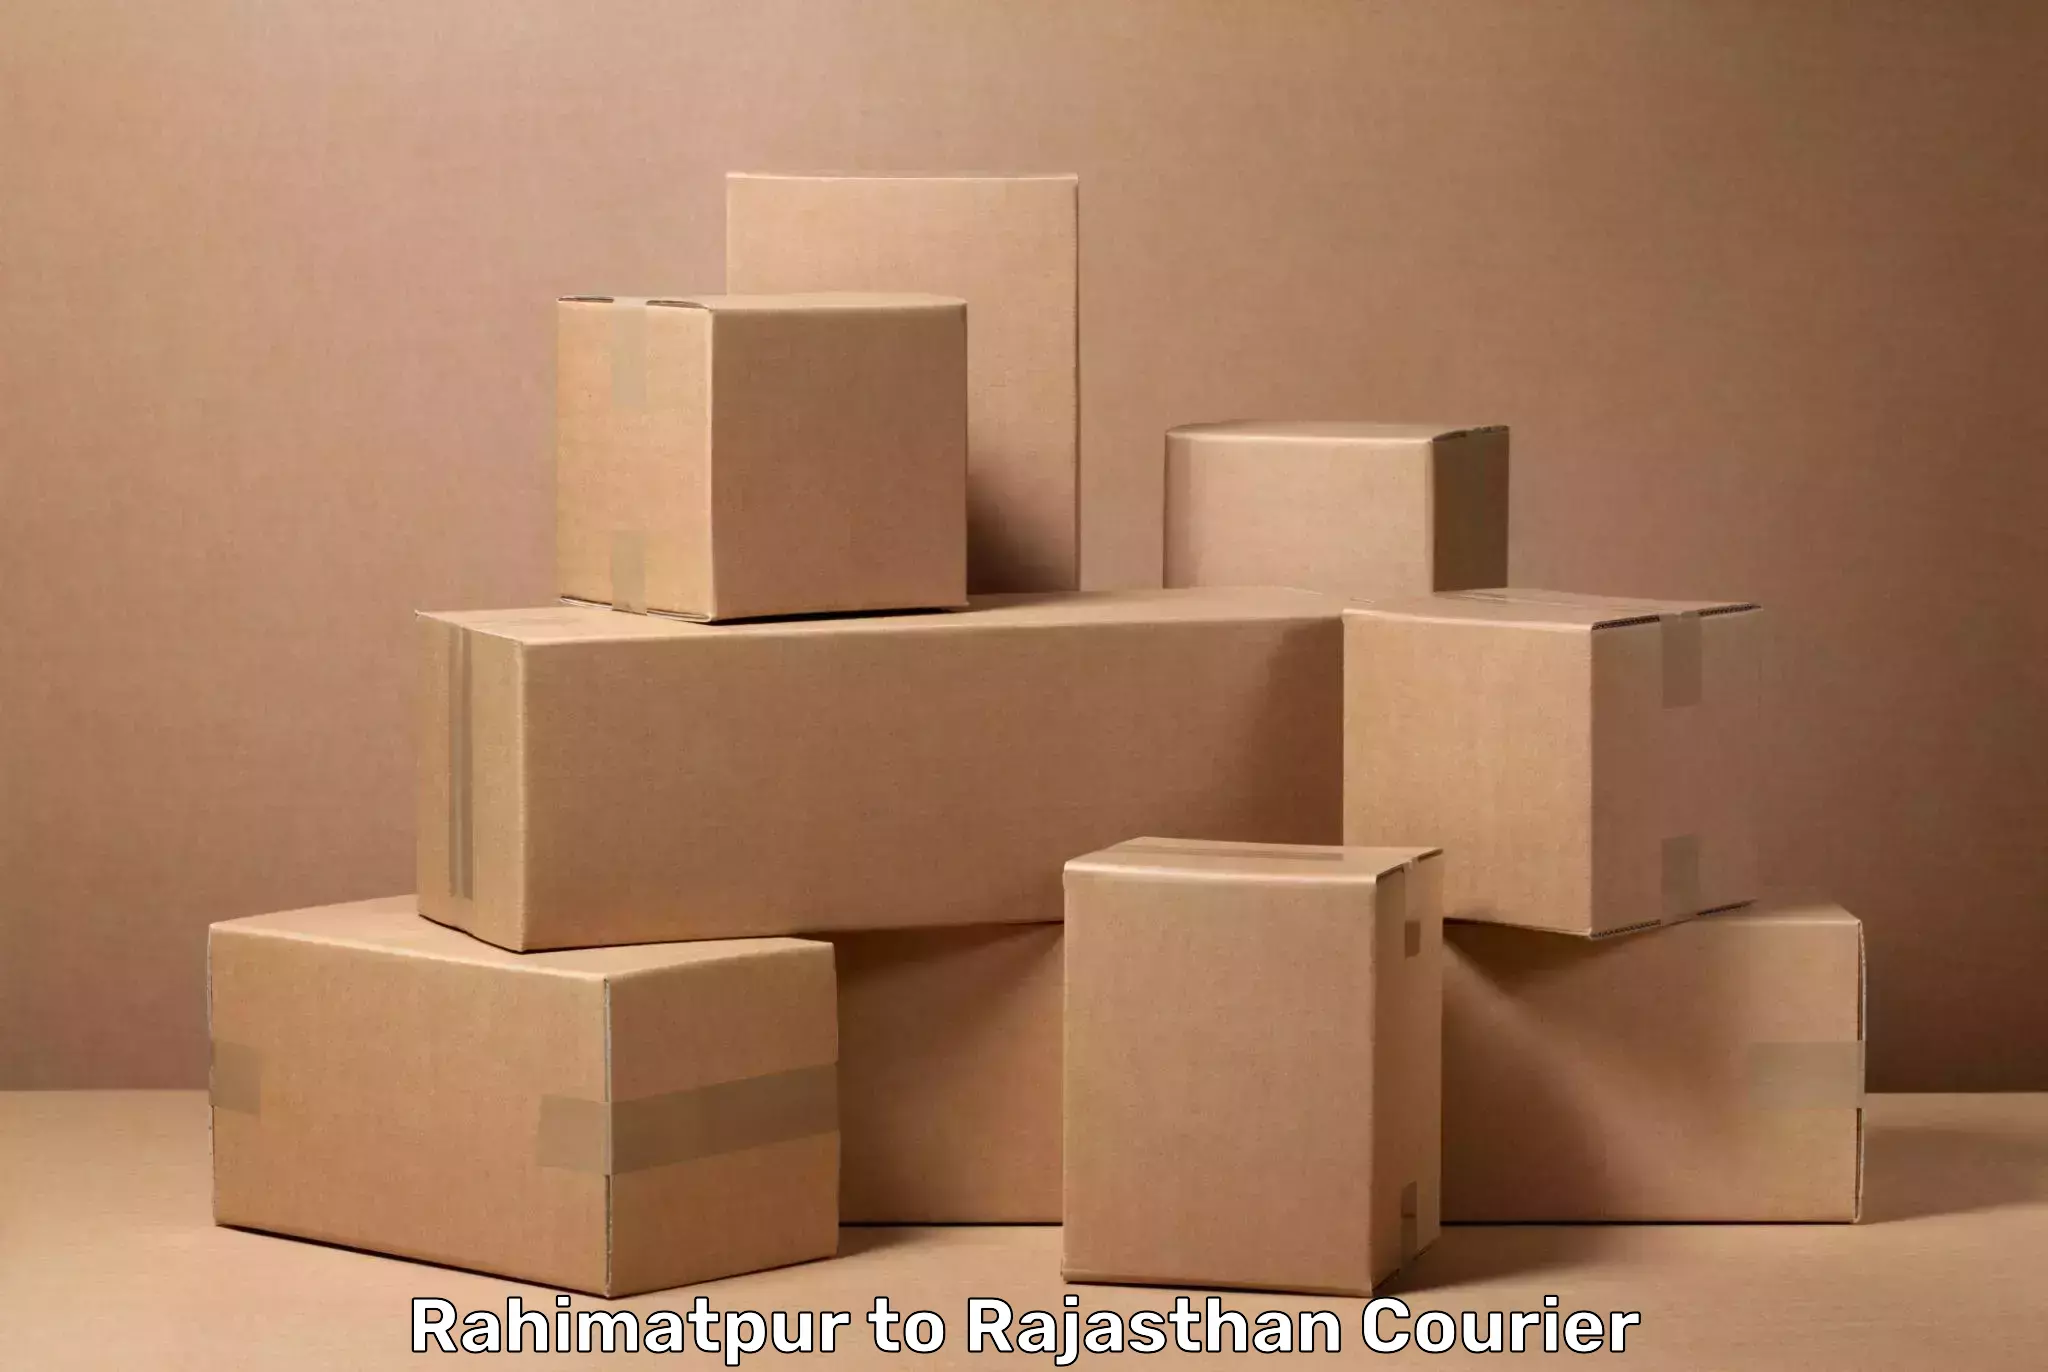 Luggage transport deals Rahimatpur to Tarnau